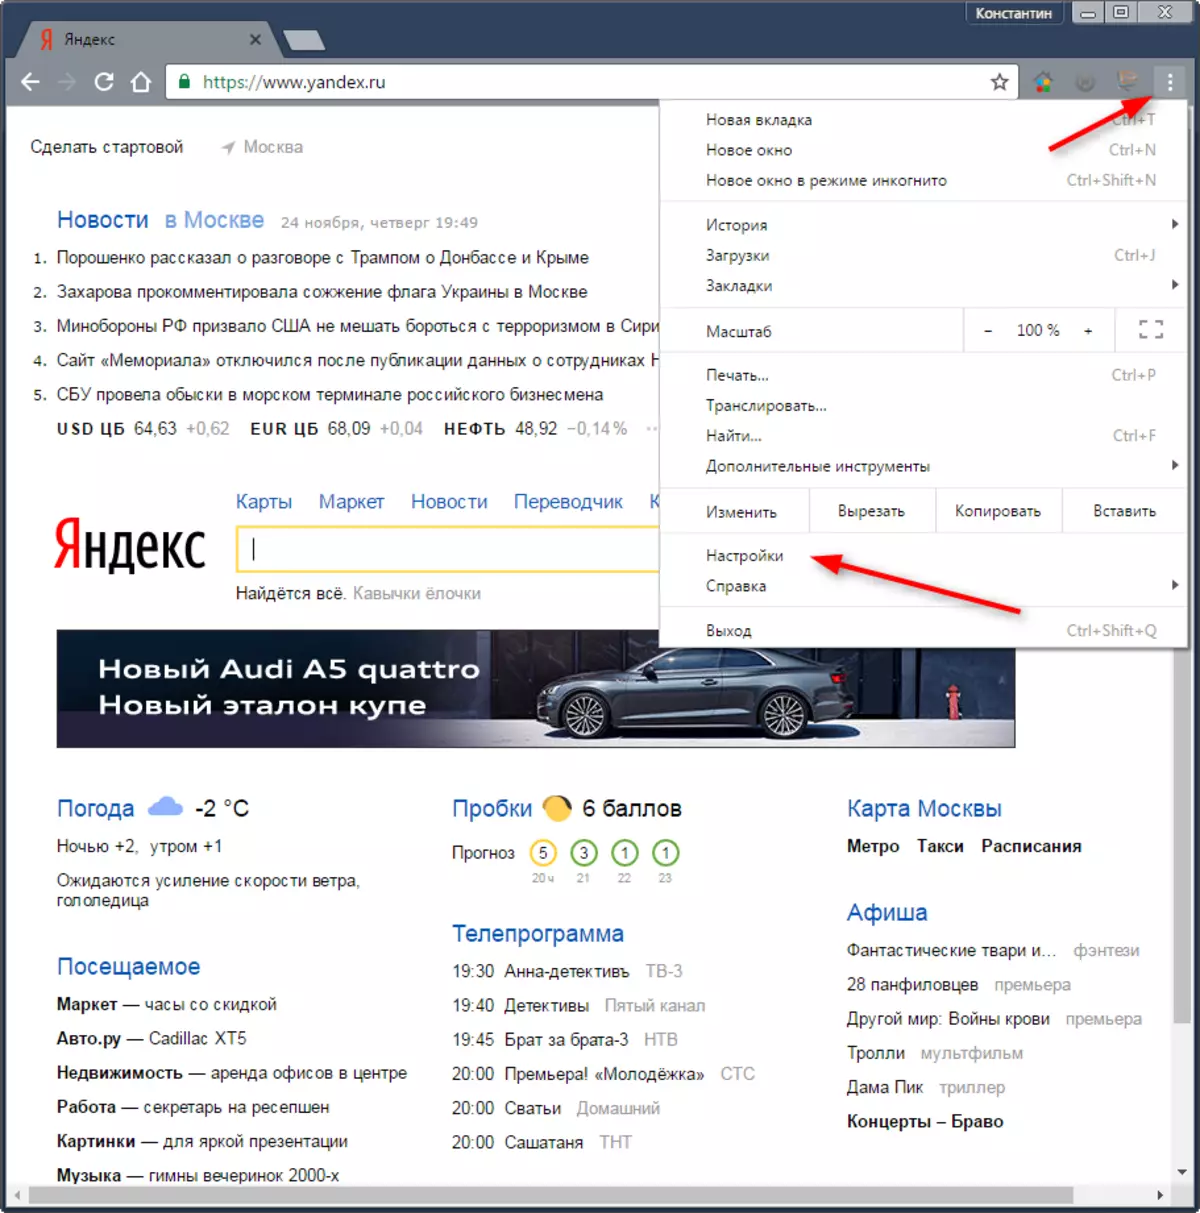 Яндекс карталары иштебей калса, эмне кылуу керек